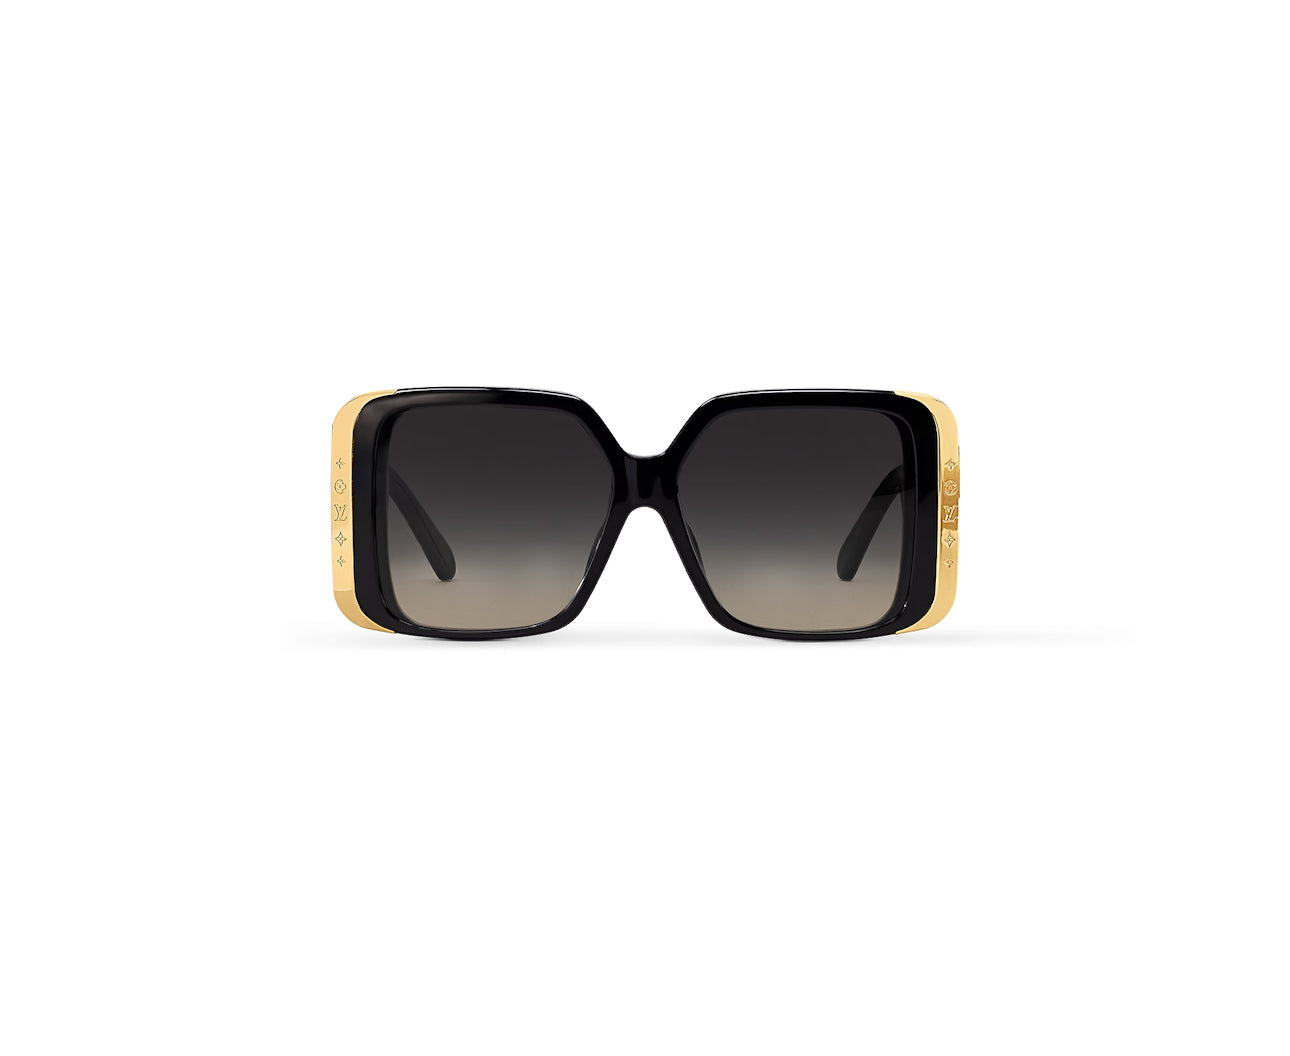 Rent sunglasses - Louis Vuitton 